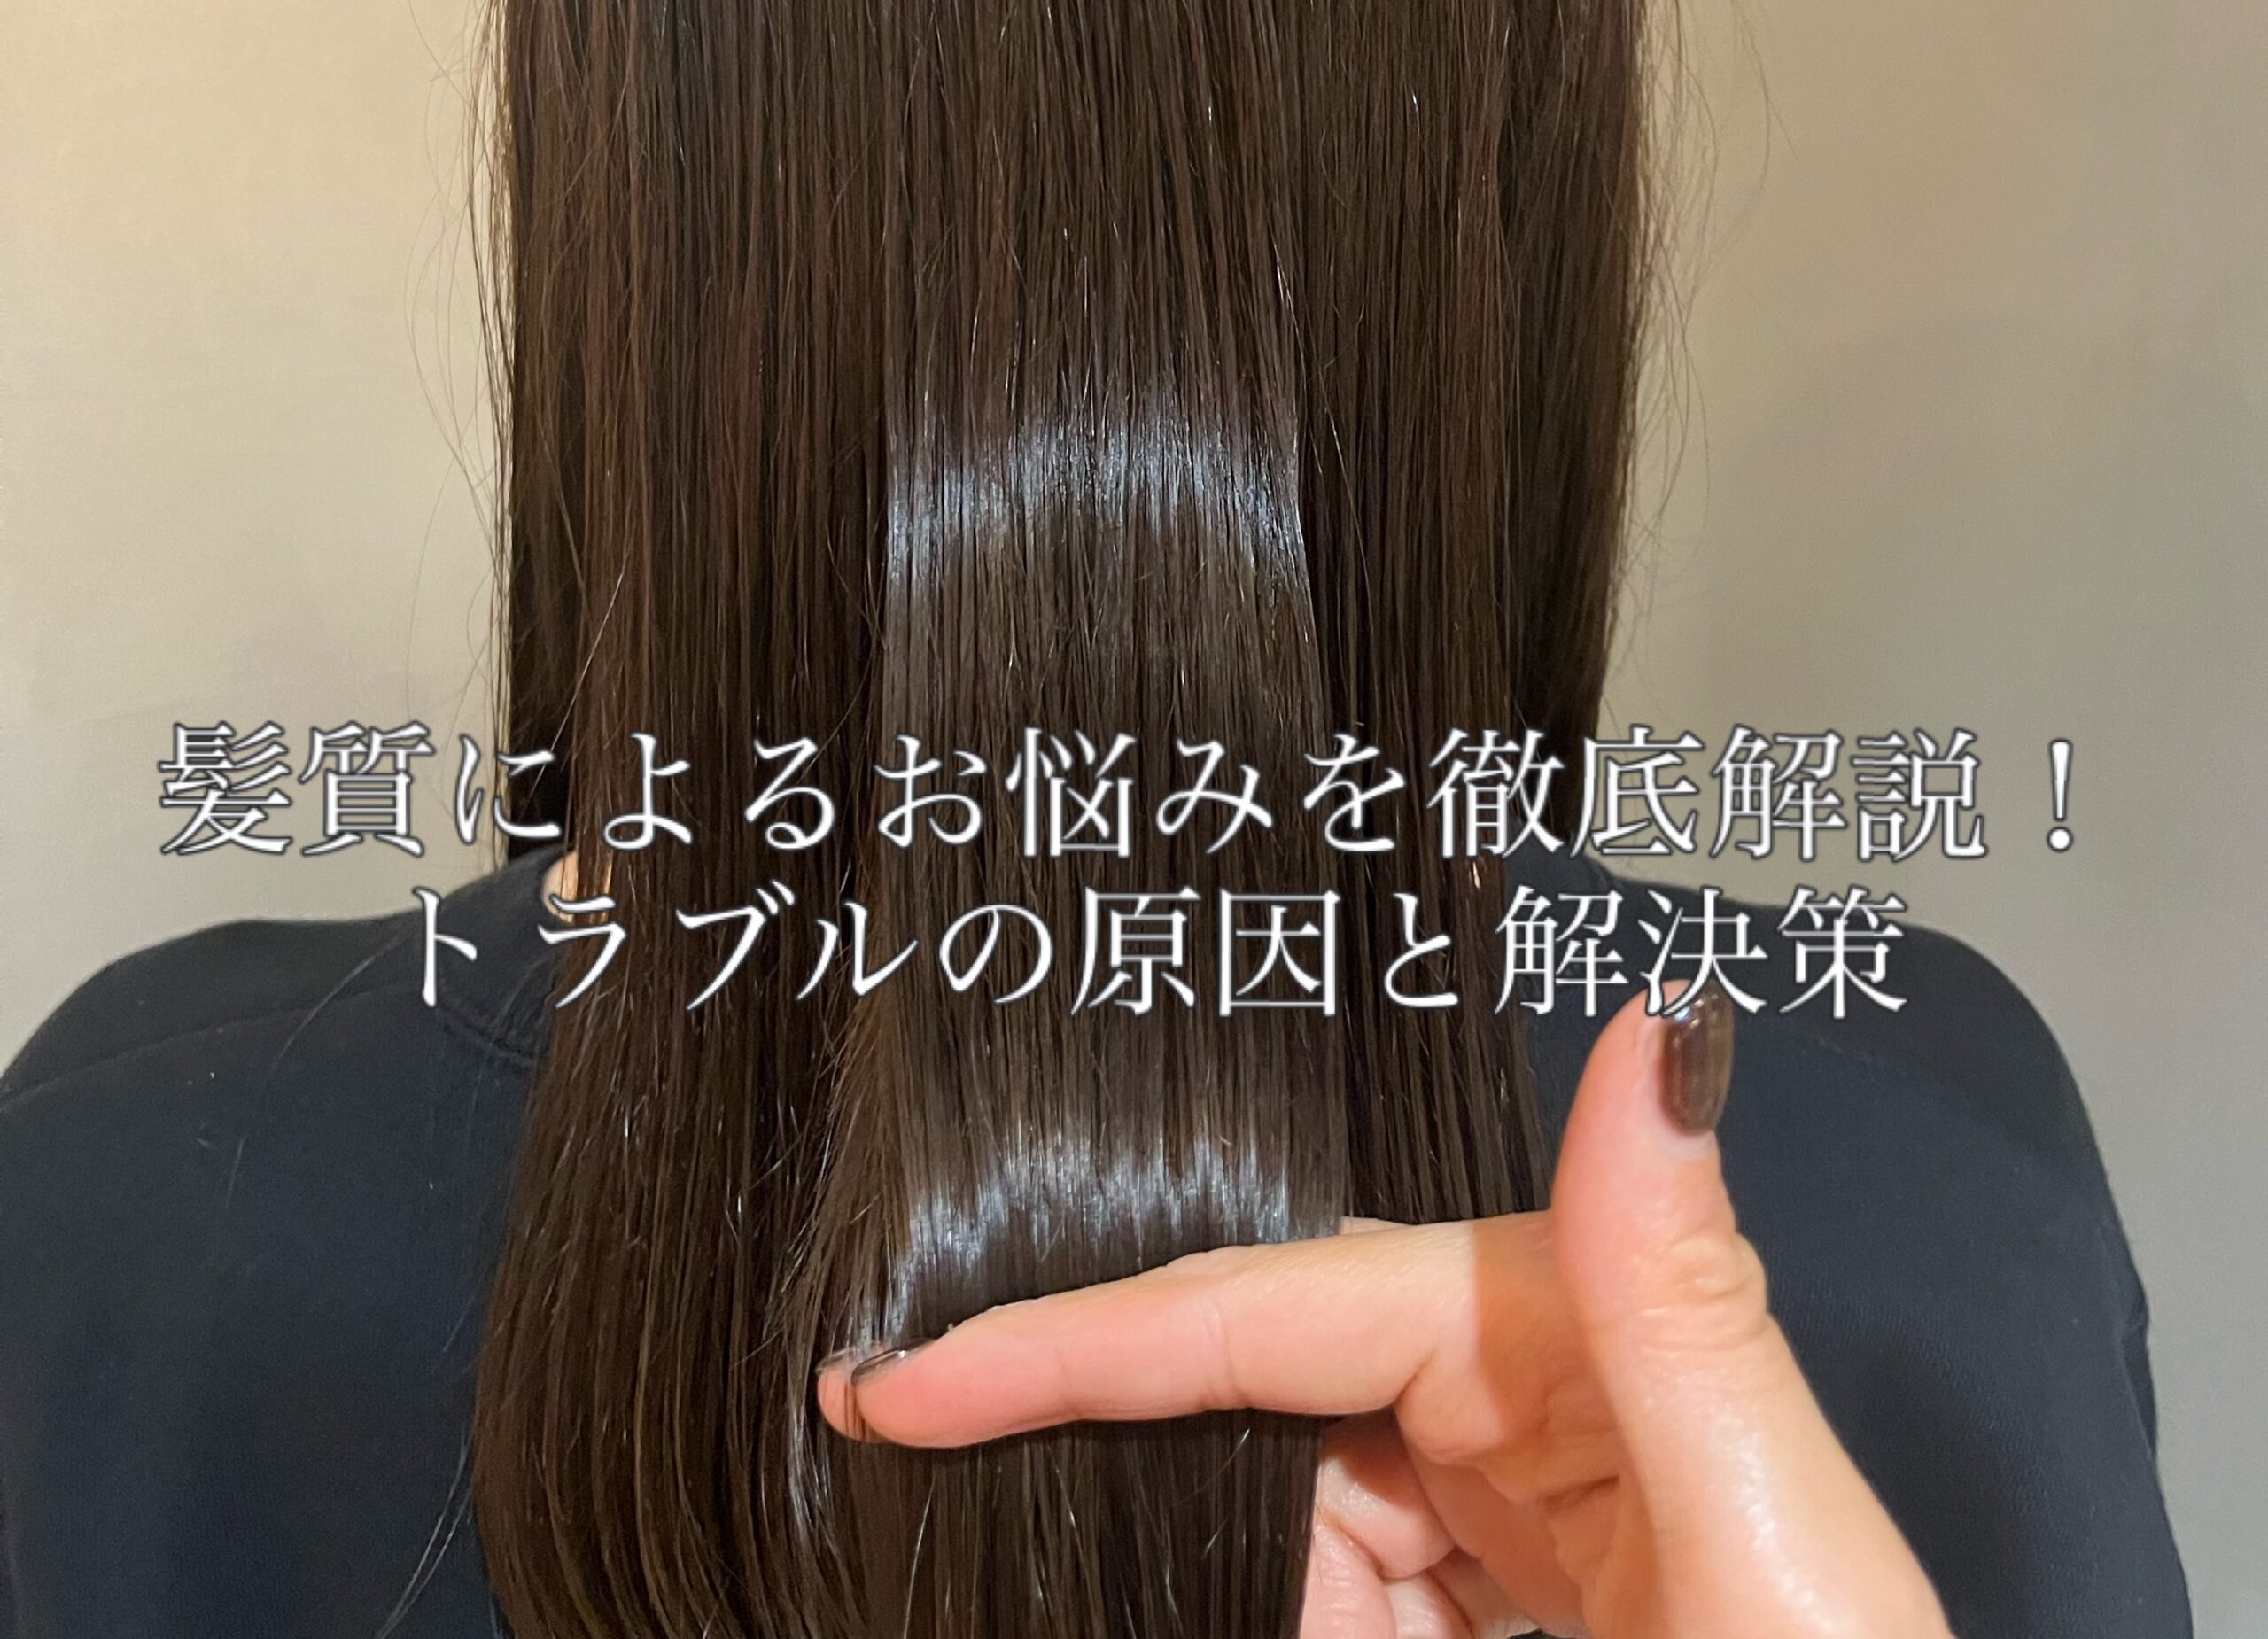 トラブル別髪の毛のケア方法 - パサつき改善方法